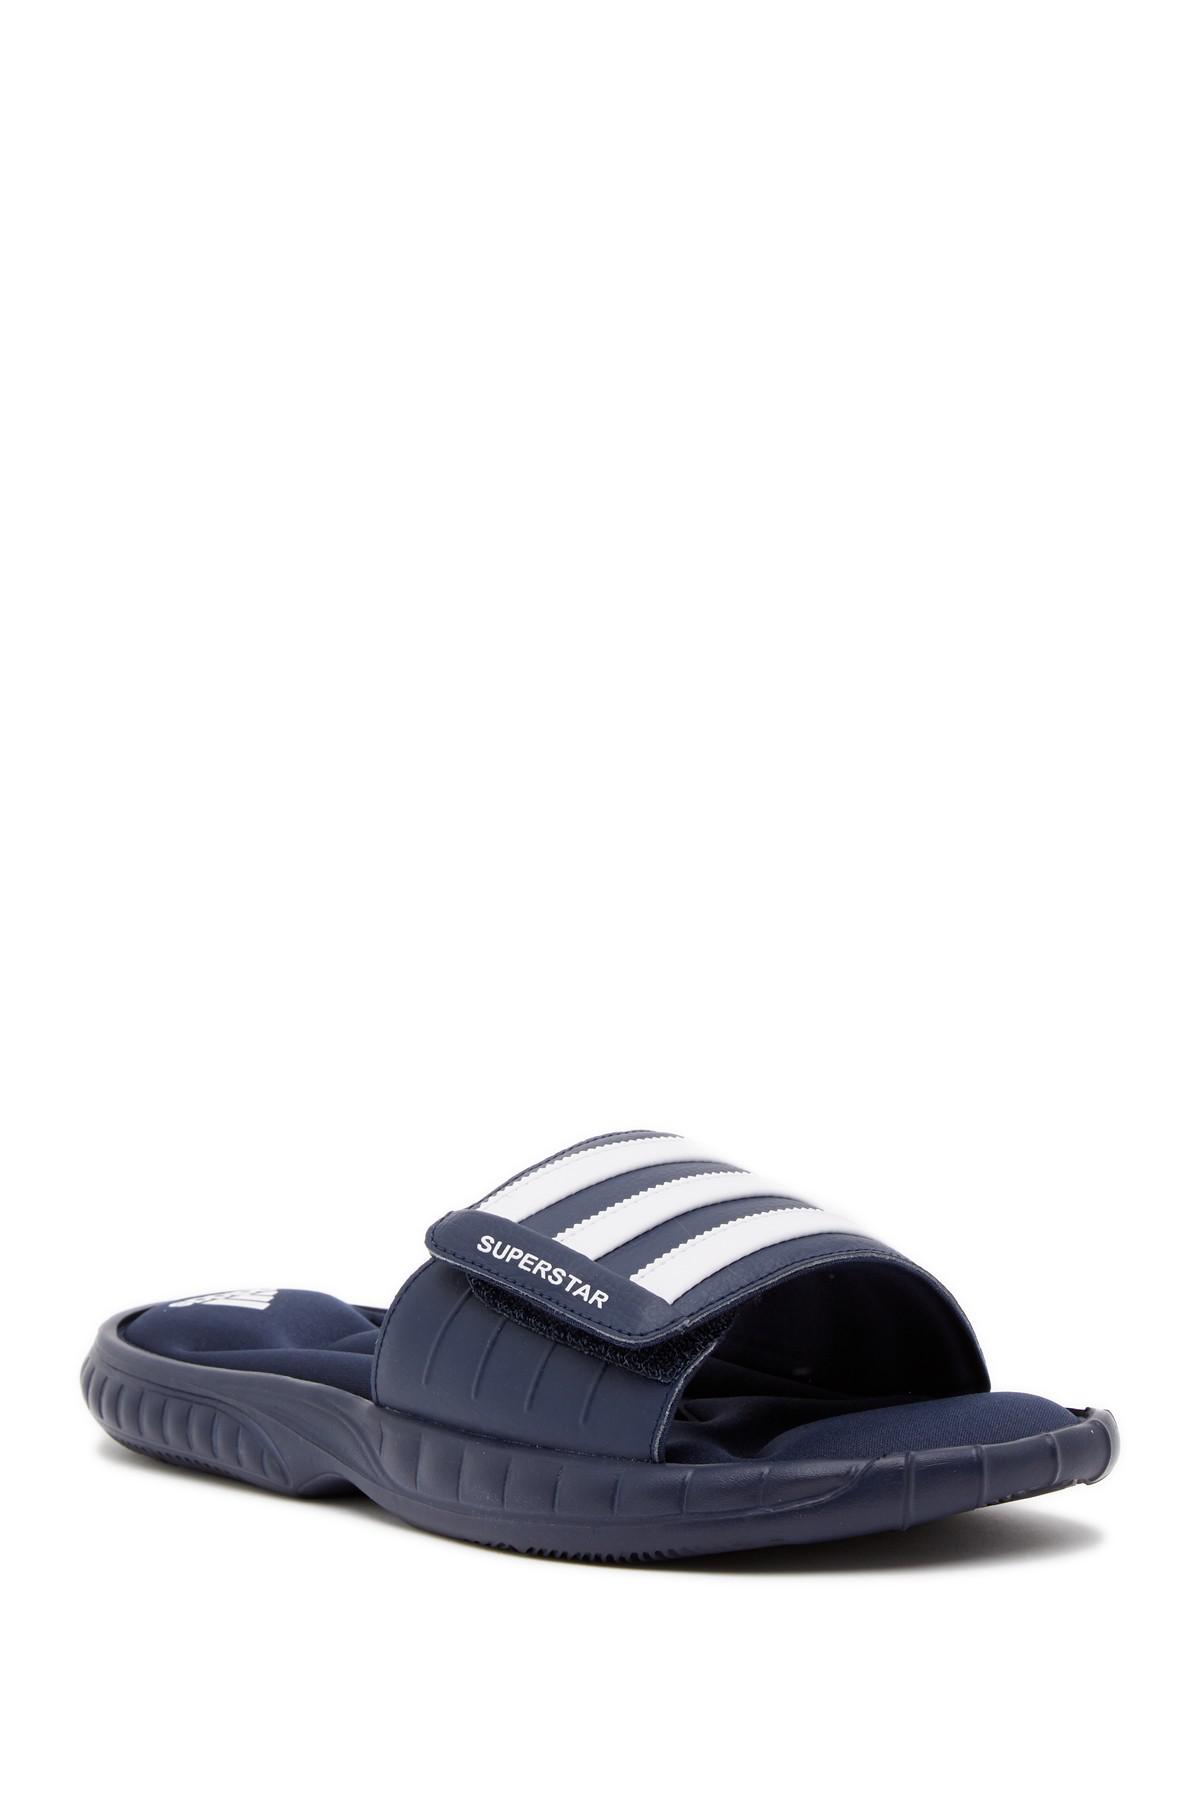 adidas Synthetic Superstar 3g Slide Sandal (men's) in Blue for Men - Lyst